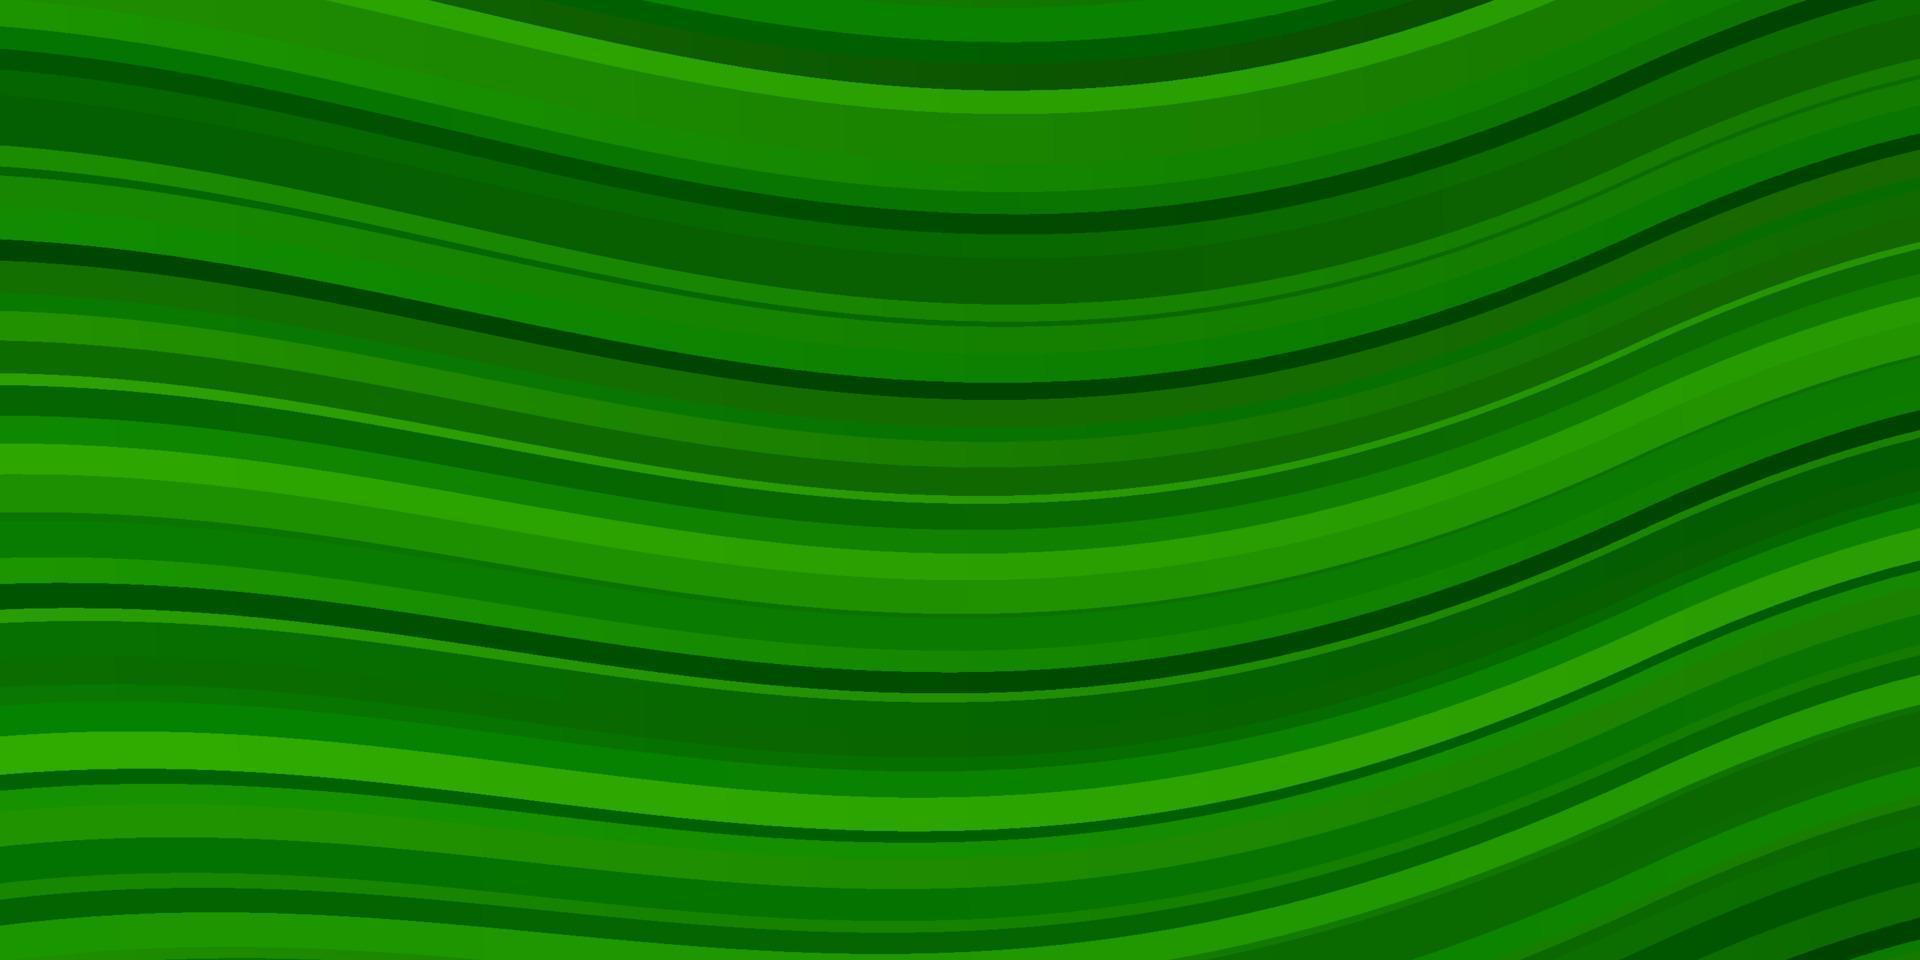 fundo de vetor verde claro com linhas dobradas.